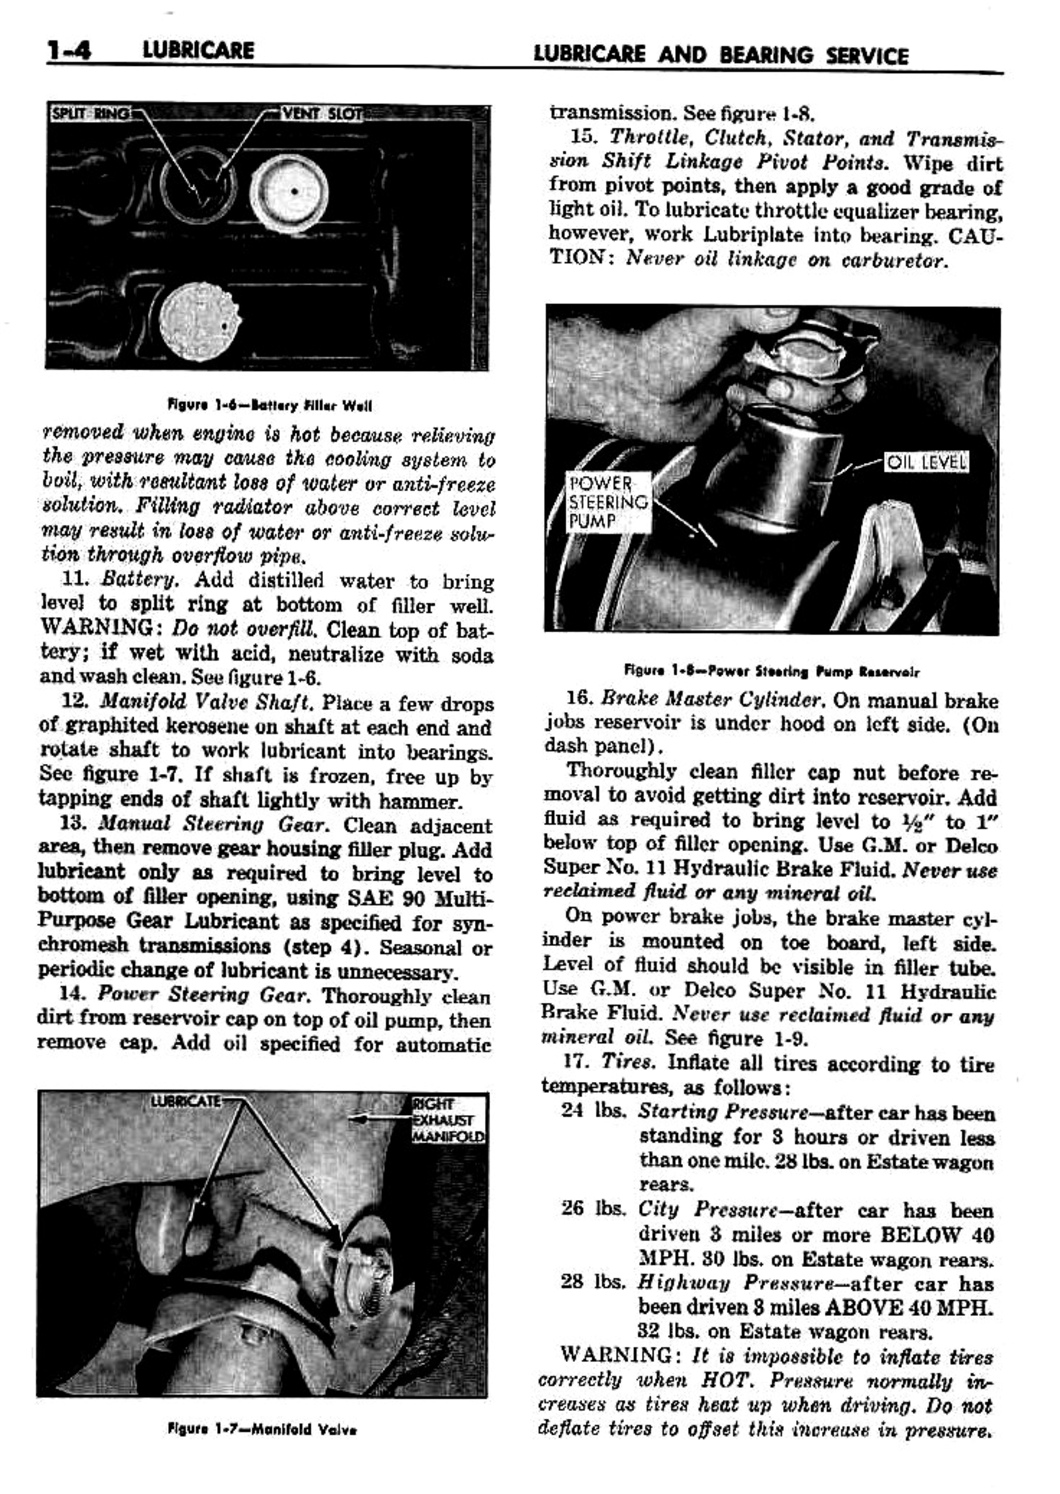 n_02 1959 Buick Shop Manual - Lubricare-004-004.jpg